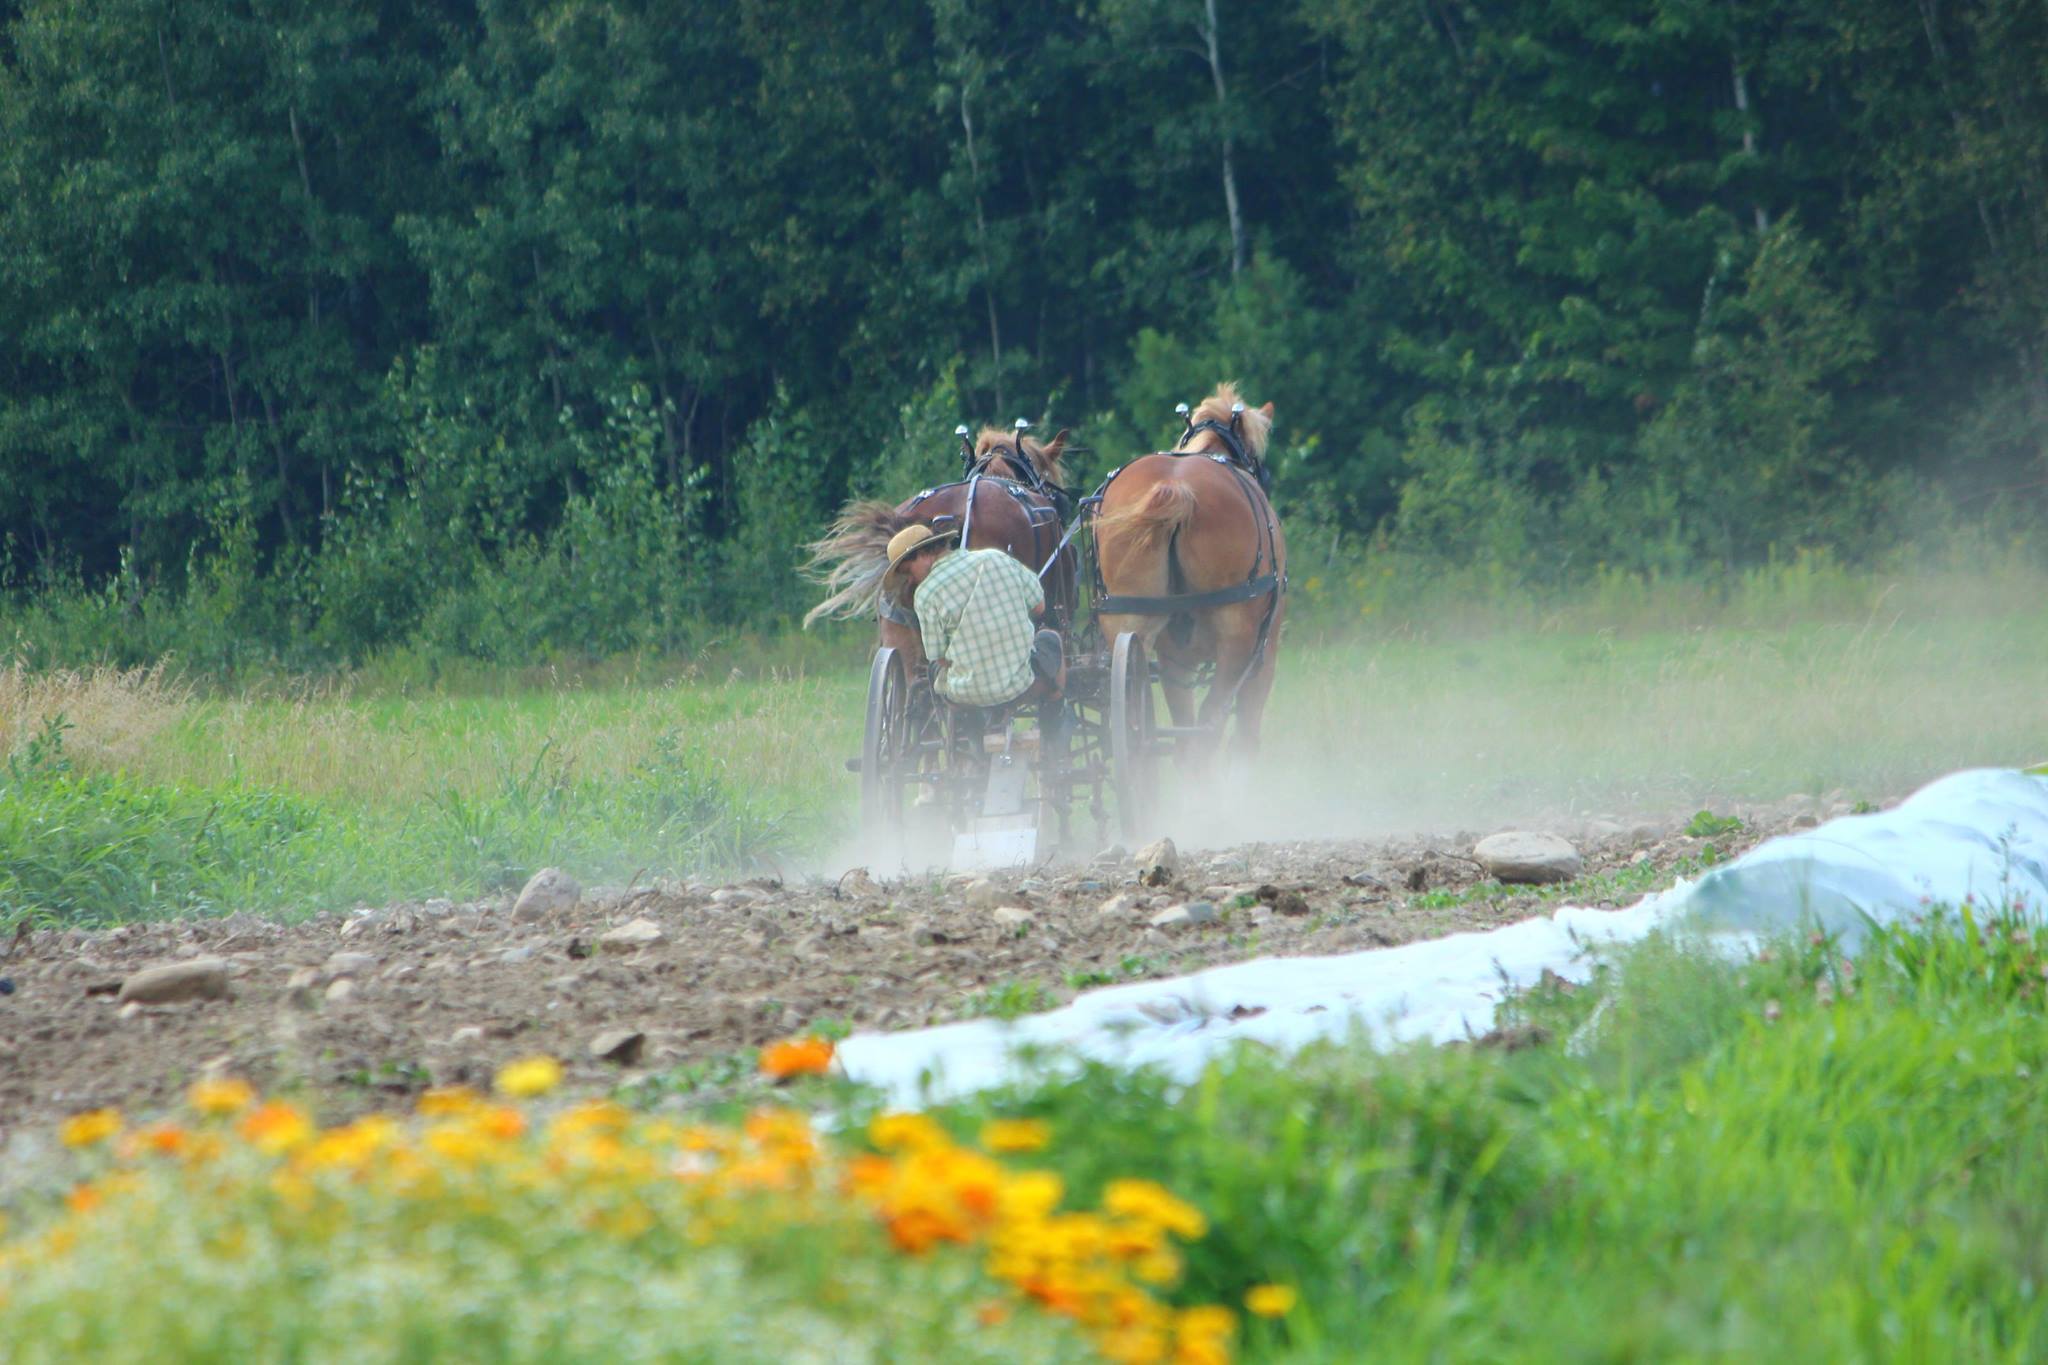 Horse-Drawn Farm Equipment in a field